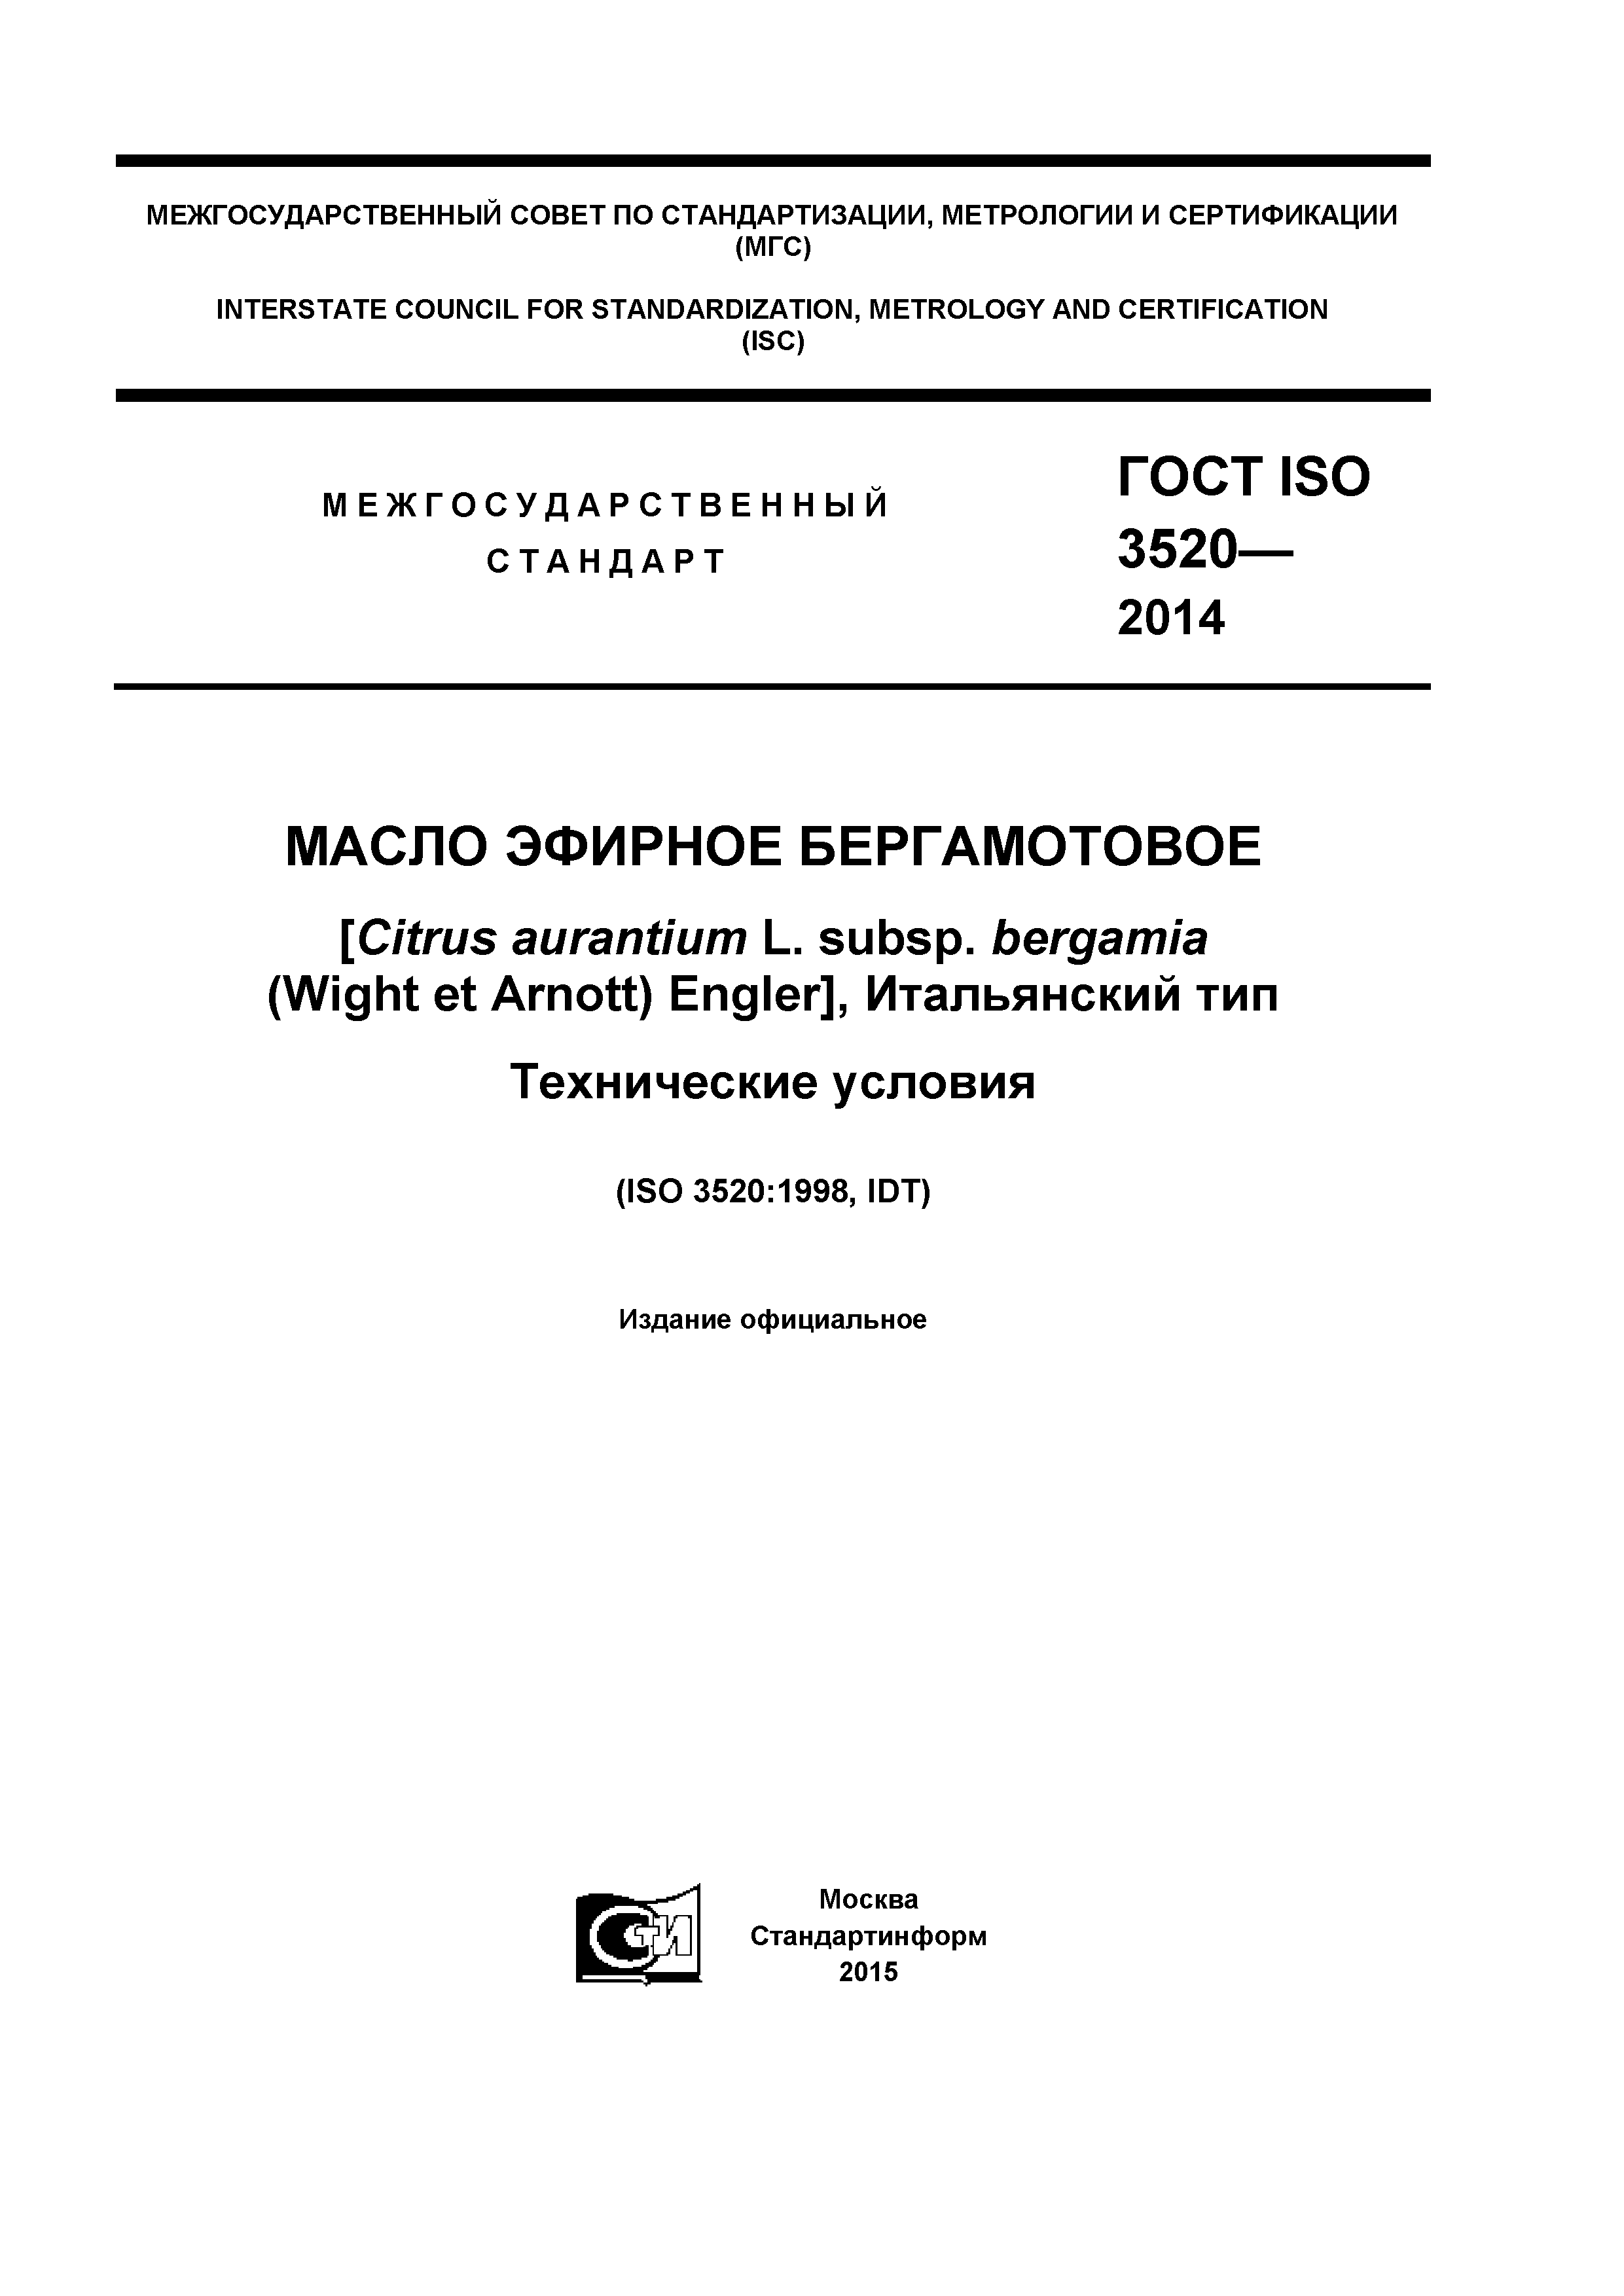 ГОСТ ISO 3520-2014